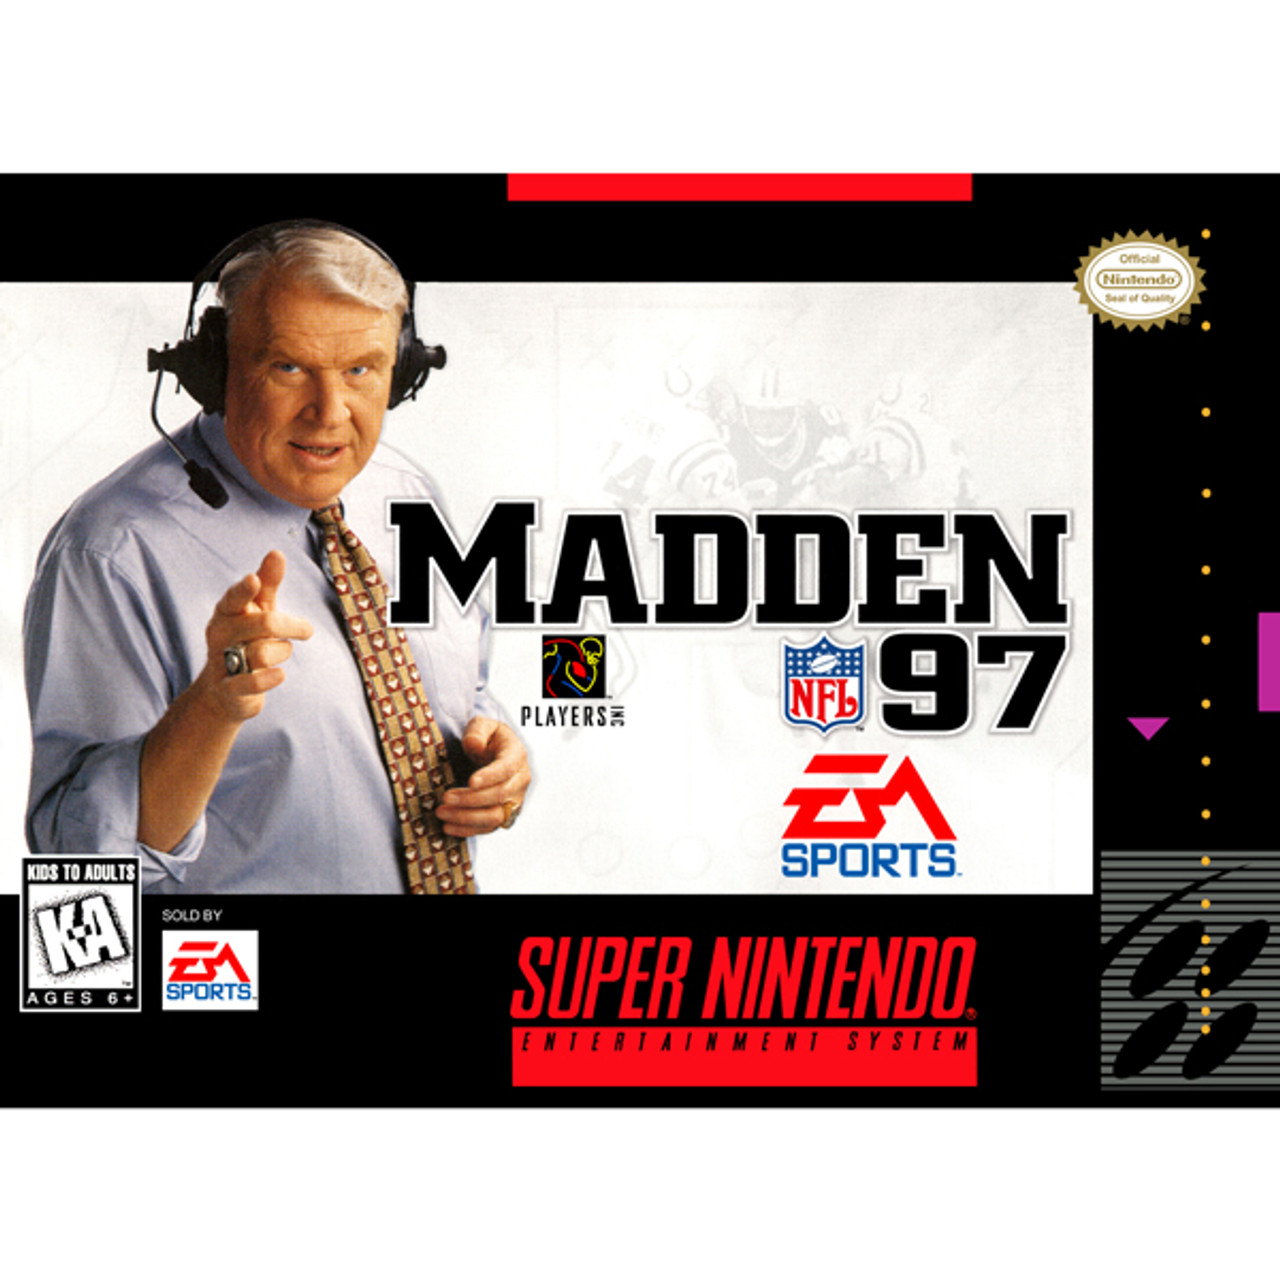 Madden NFL '97 Super Nintendo SNES Game For Sale